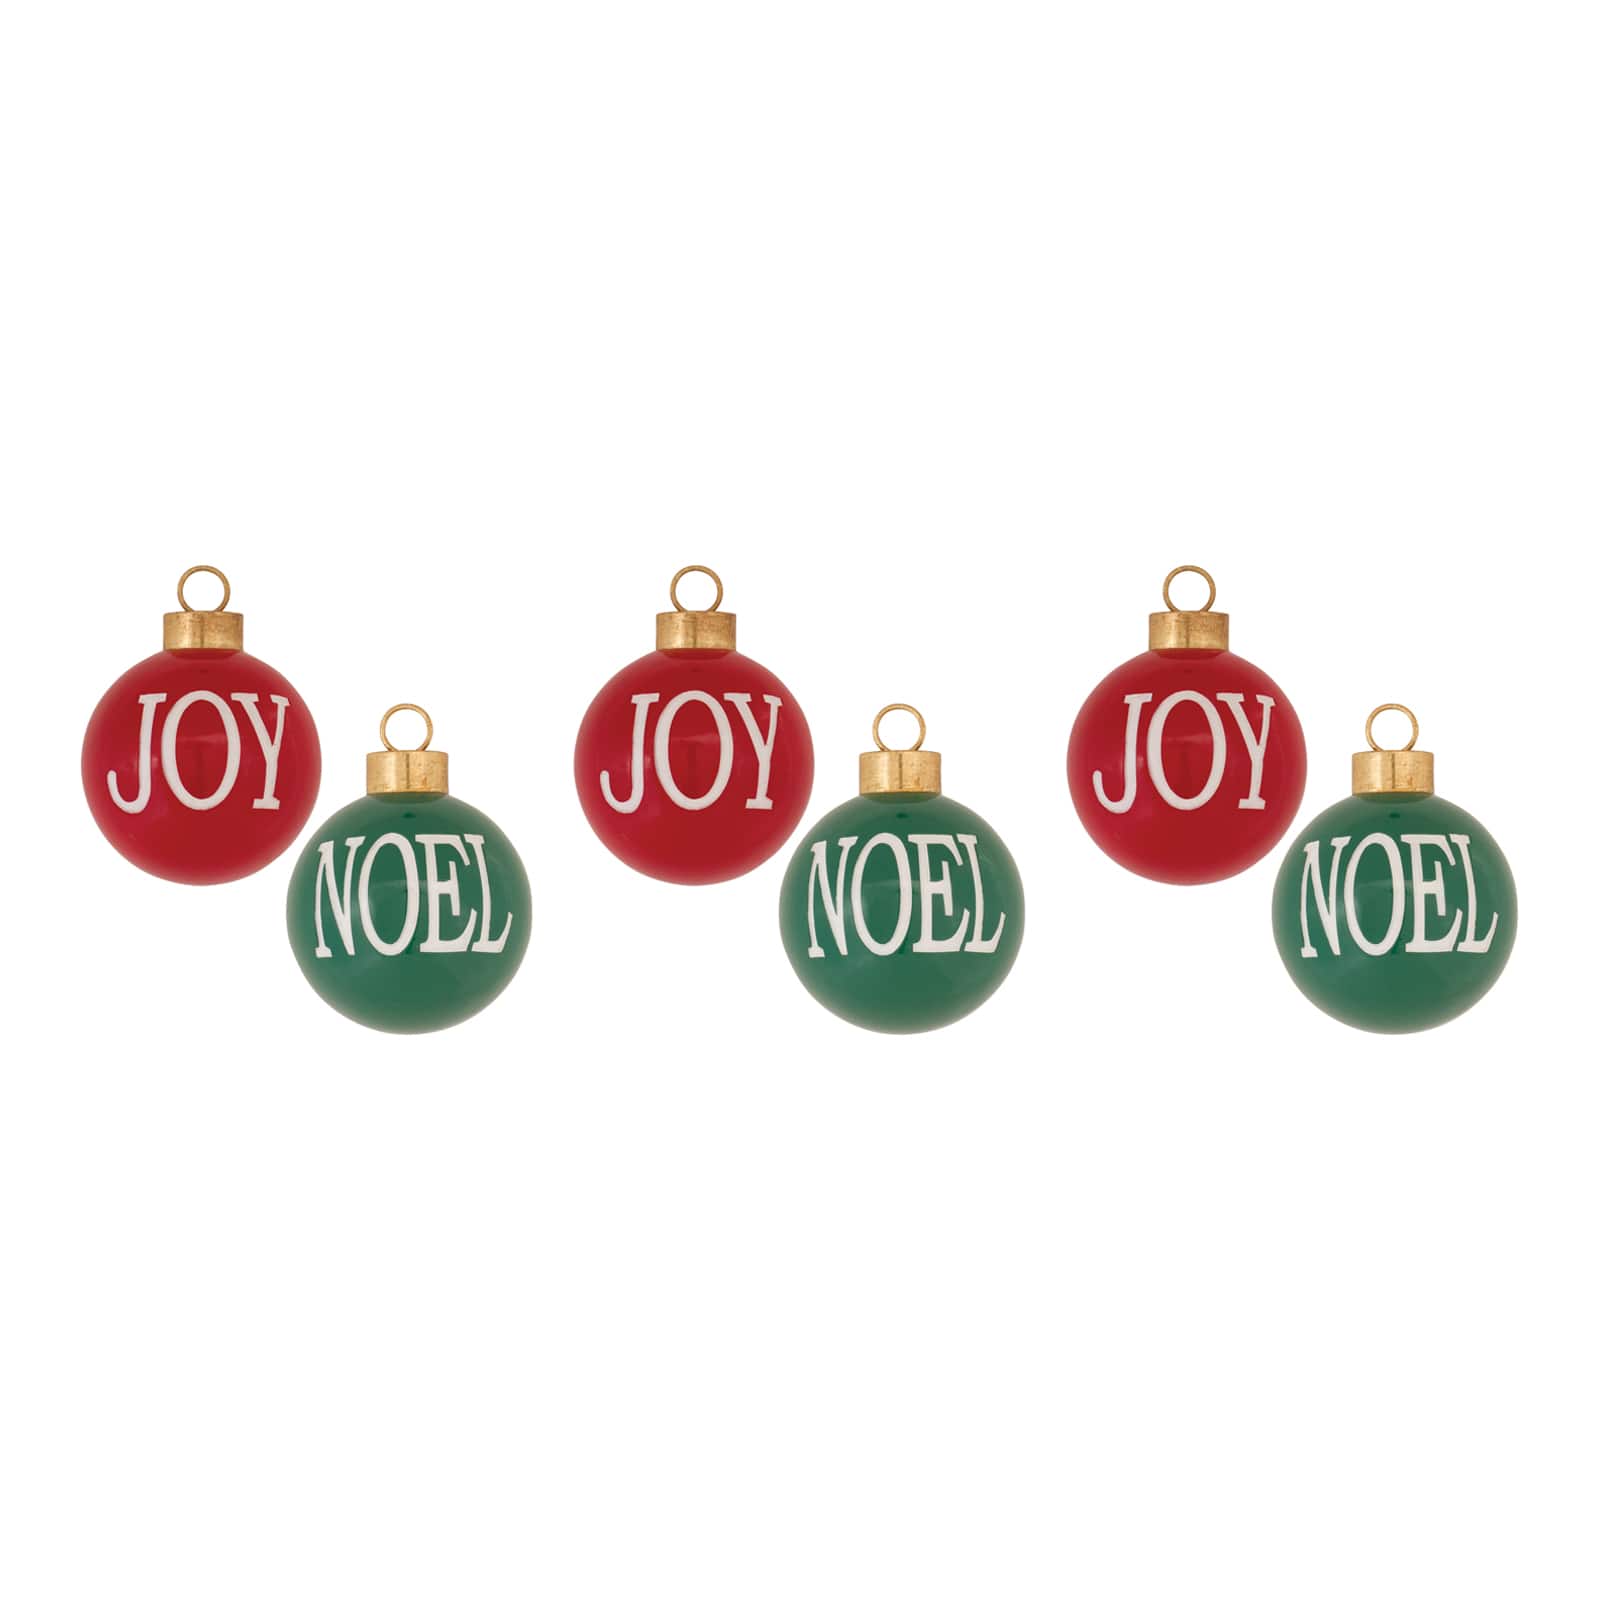 Joy &#x26; Noel Ball Ornament Set